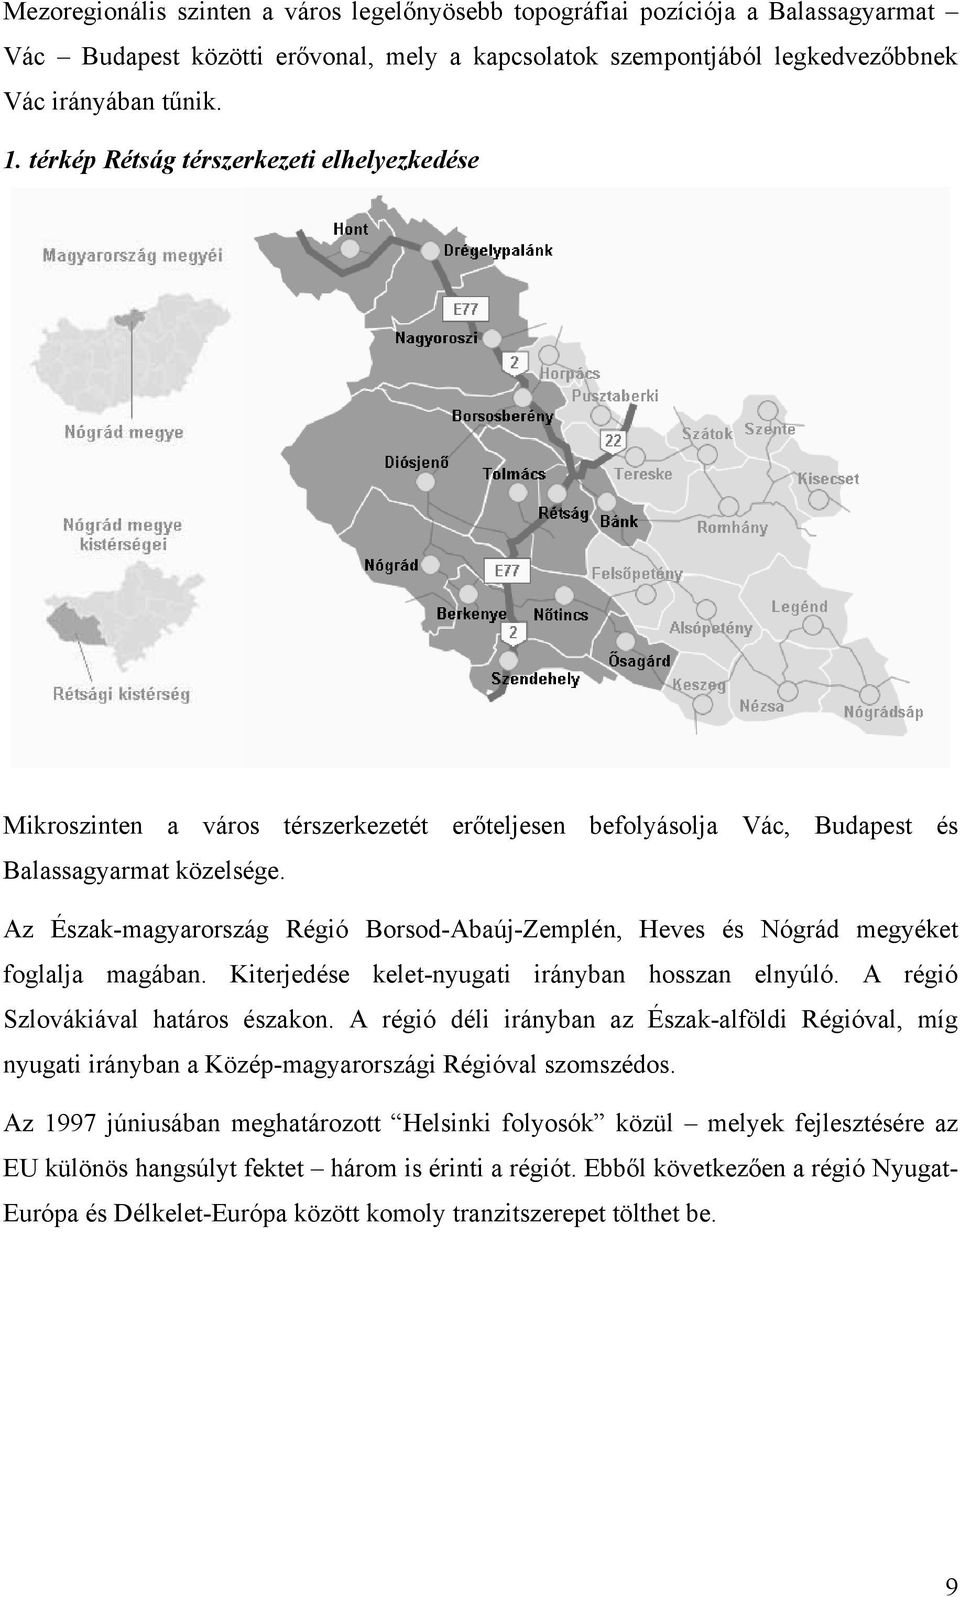 Az Észak-magyarország Régió Borsod-Abaúj-Zemplén, Heves és Nógrád megyéket foglalja magában. Kiterjedése kelet-nyugati irányban hosszan elnyúló. A régió Szlovákiával határos északon.